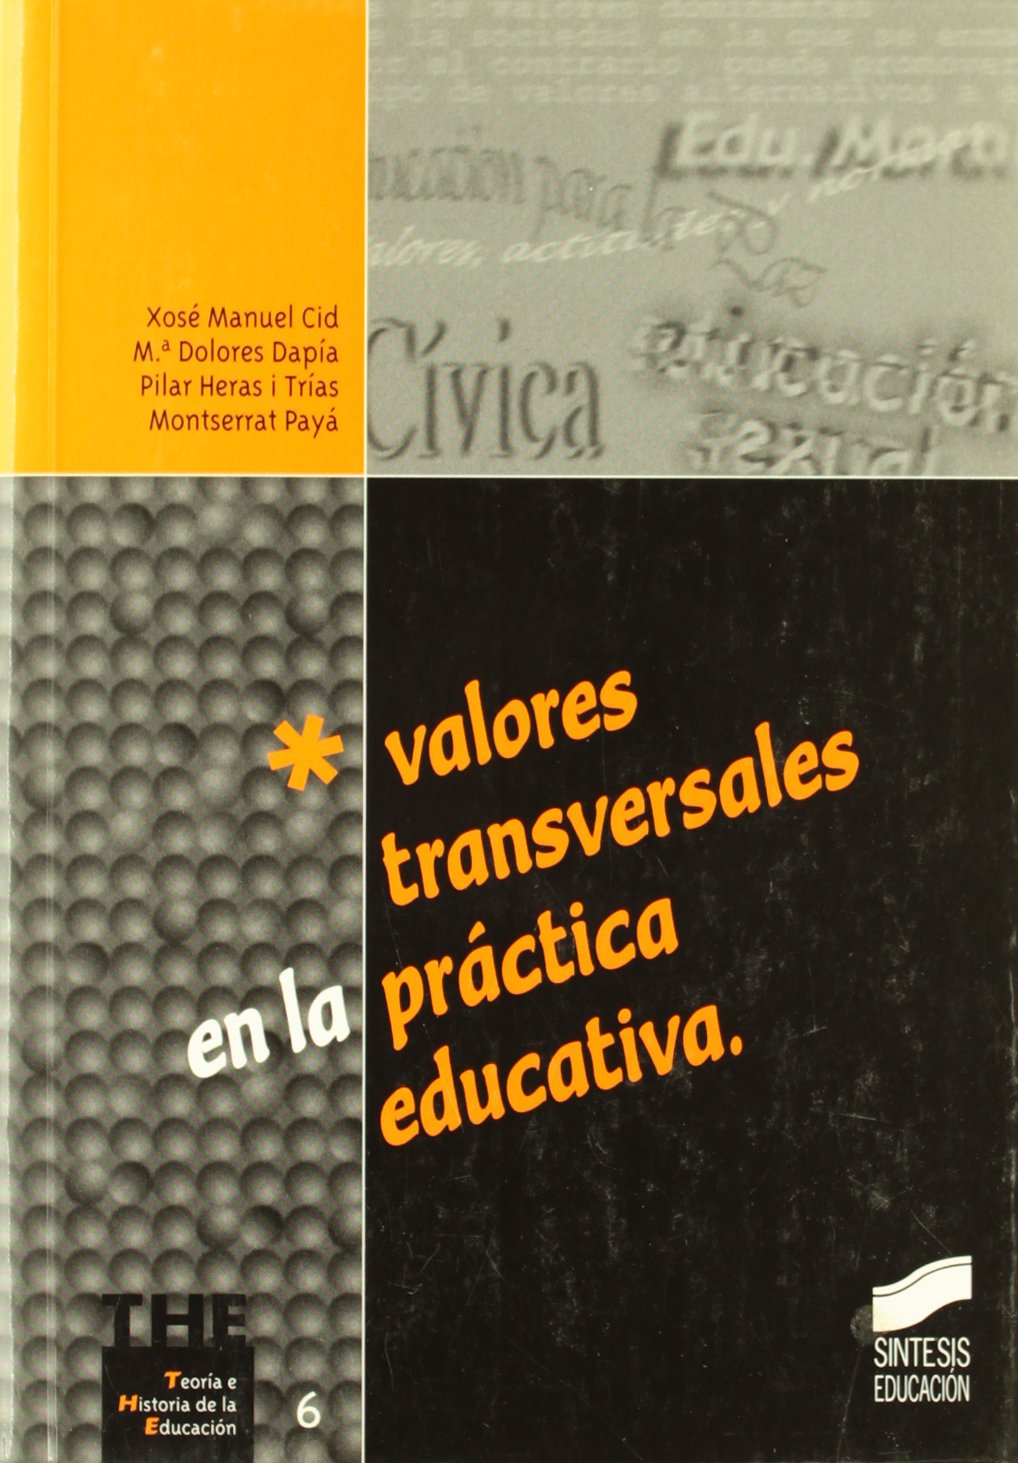 Imagen de portada del libro Valores transversales en la práctica educativa